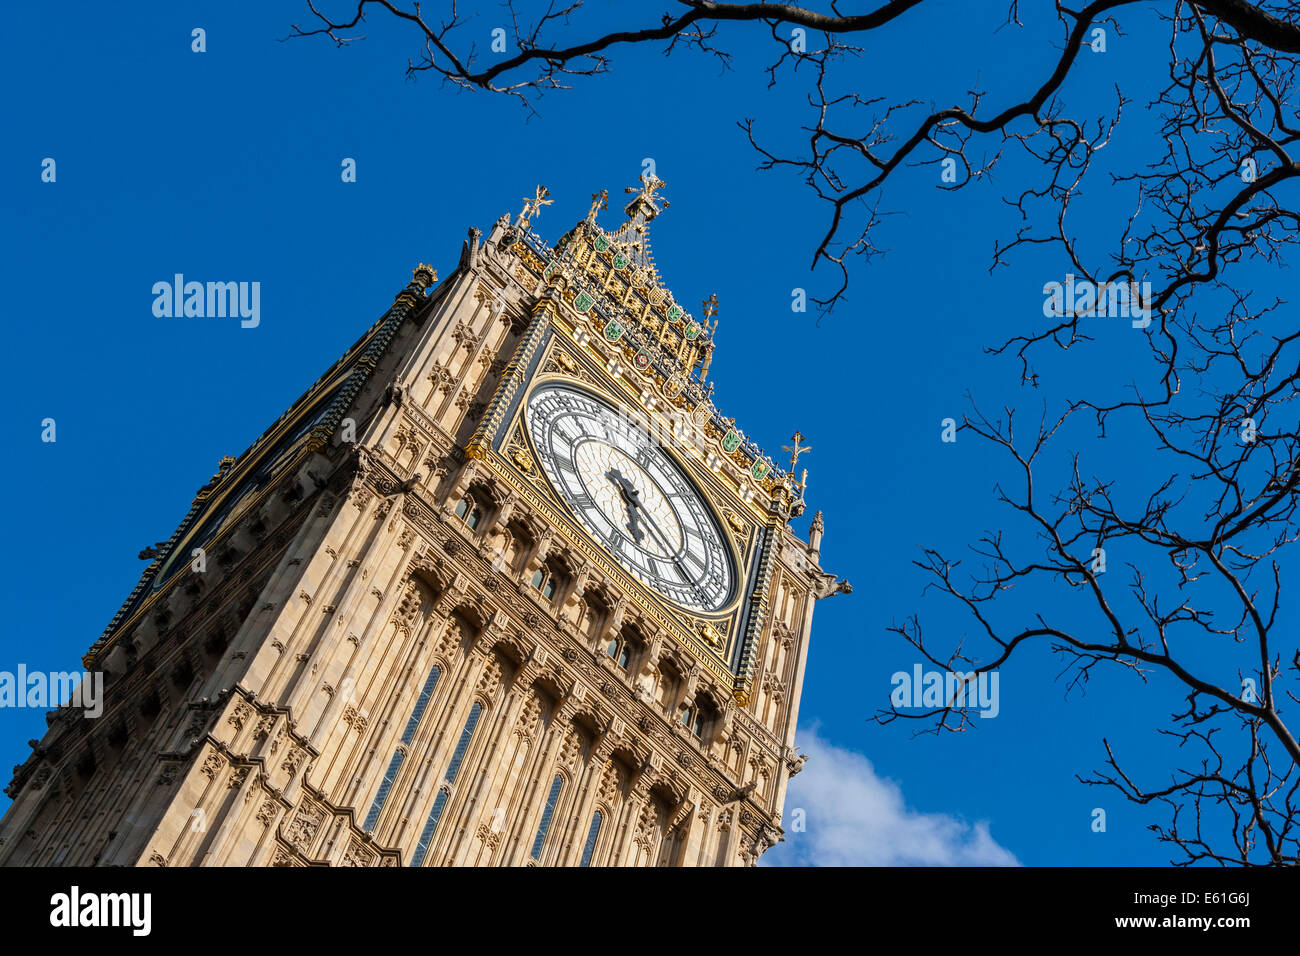 Elizabeth Tower clock logement communément connu sous le nom de Big Ben, dans les chambres du Parlement Londres Angleterre Royaume-uni. JMH6358 Banque D'Images